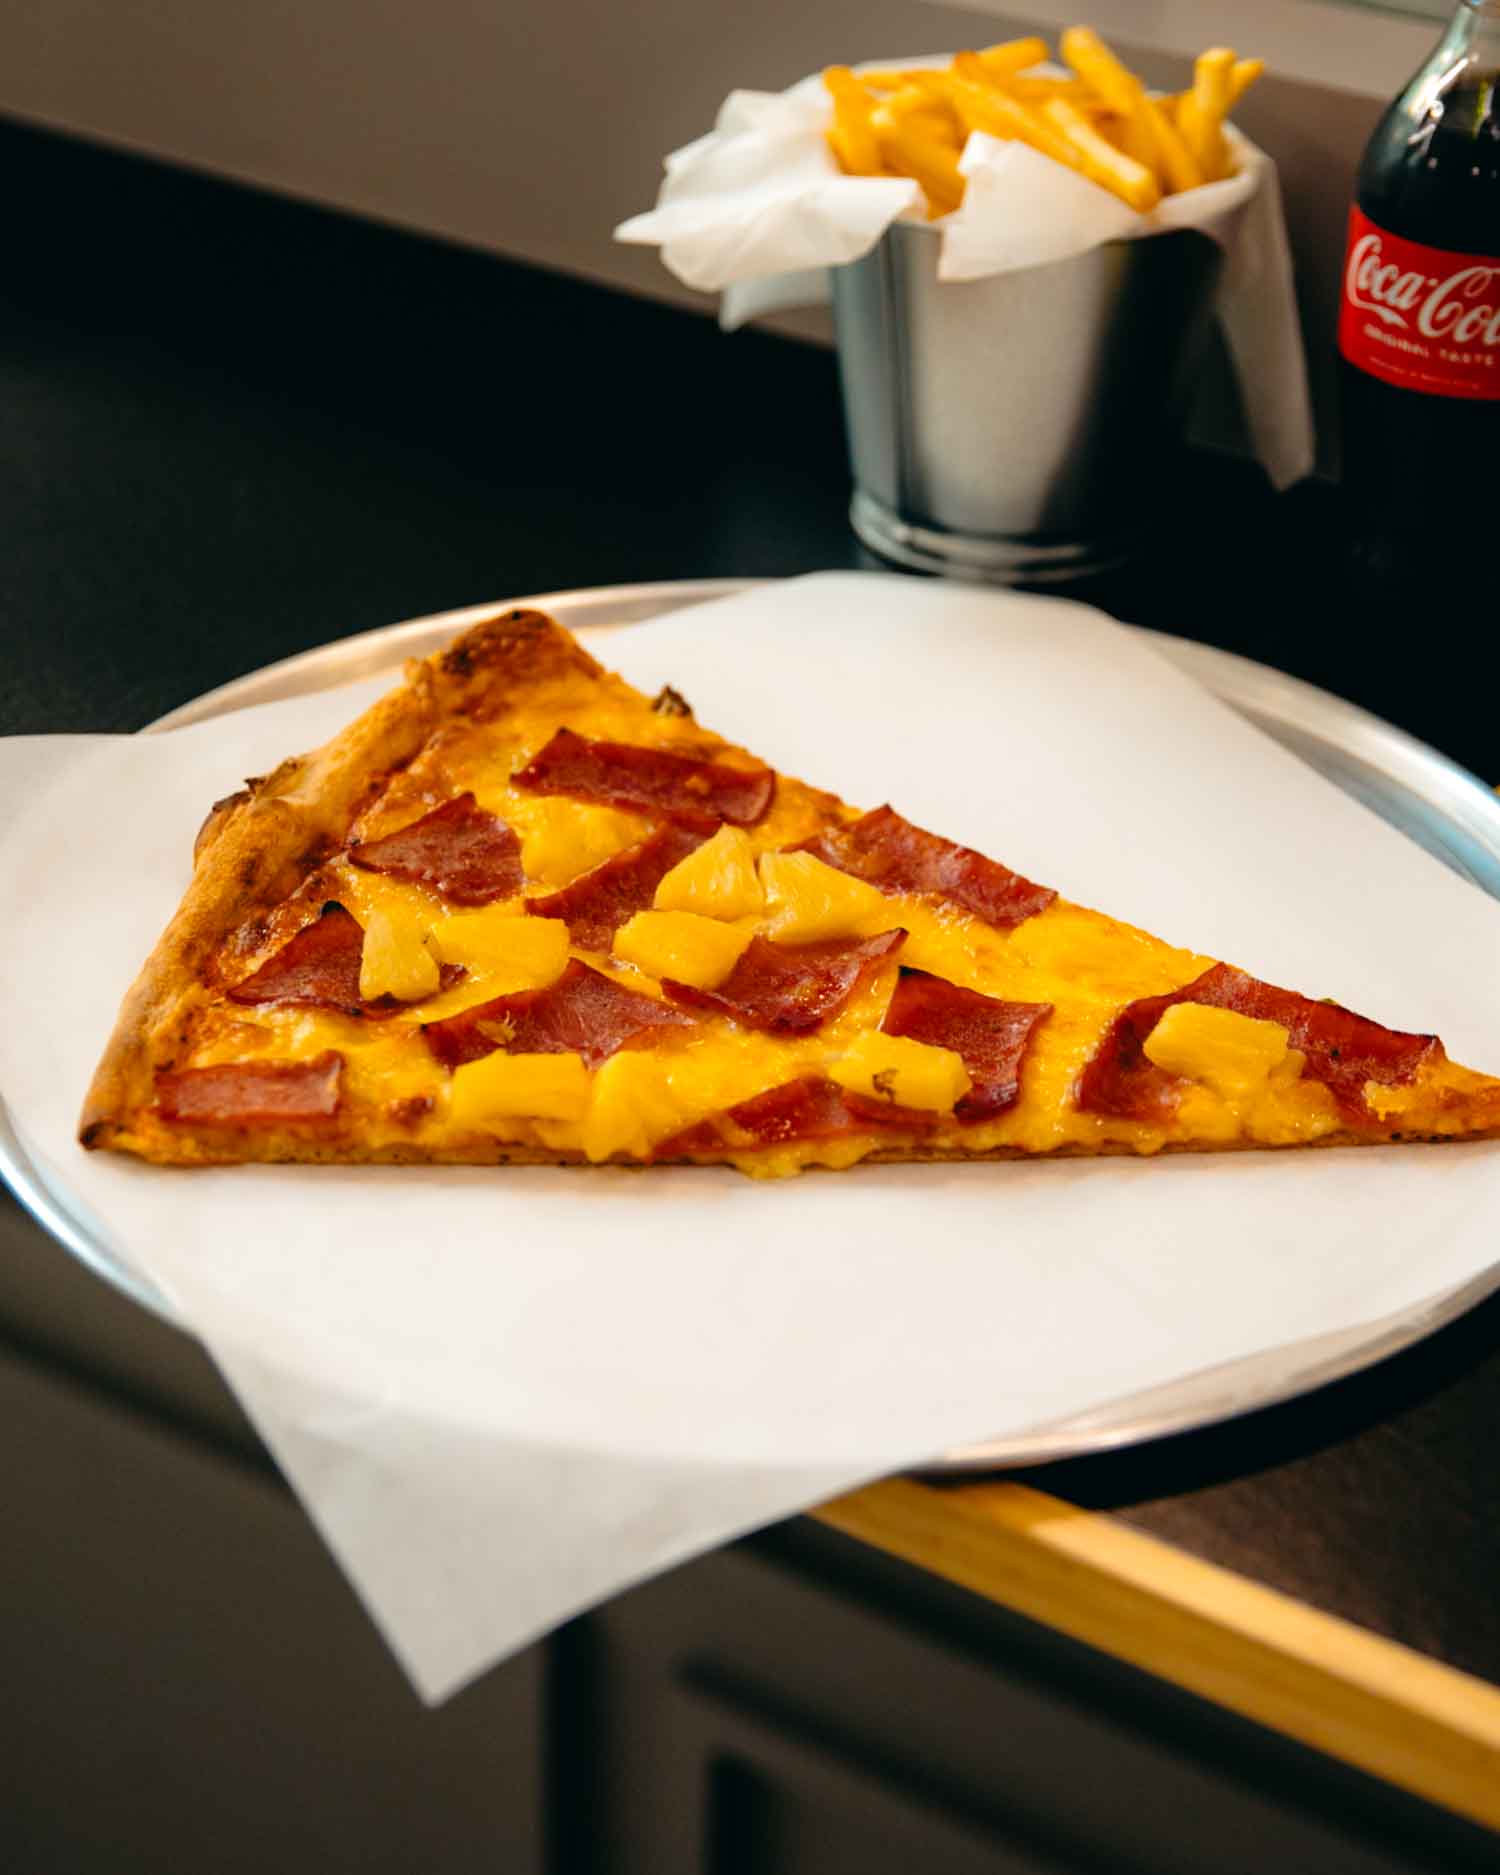 新竹美食-JIMS PIZZA 道地美式紐約風格披薩店。